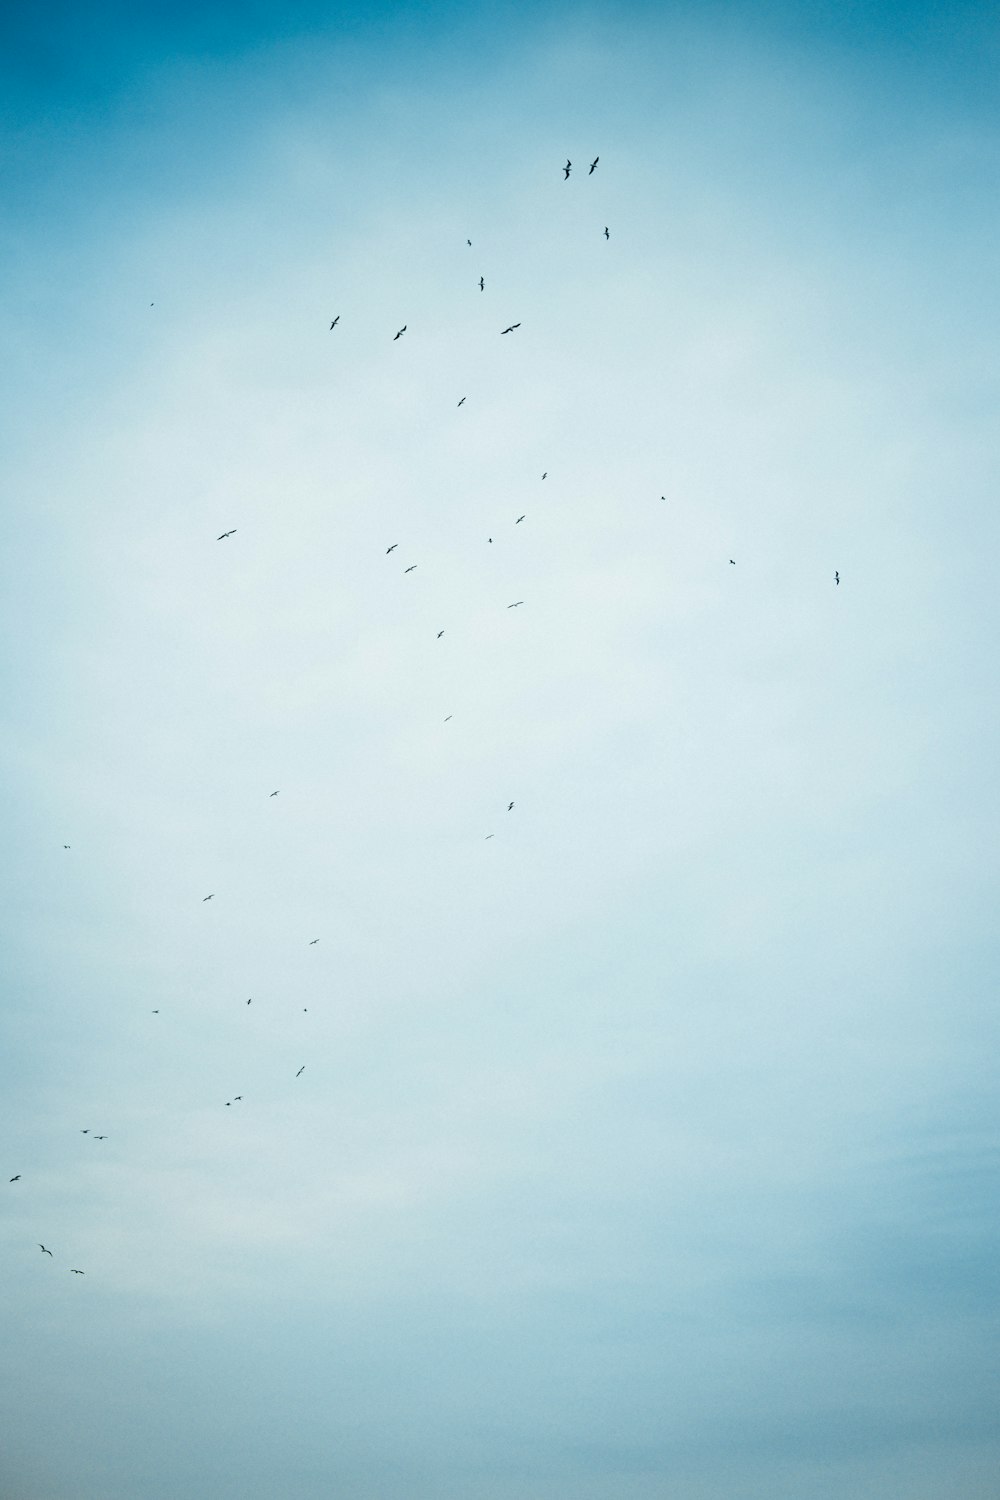 bandada de pájaros volando bajo nubes blancas durante el día